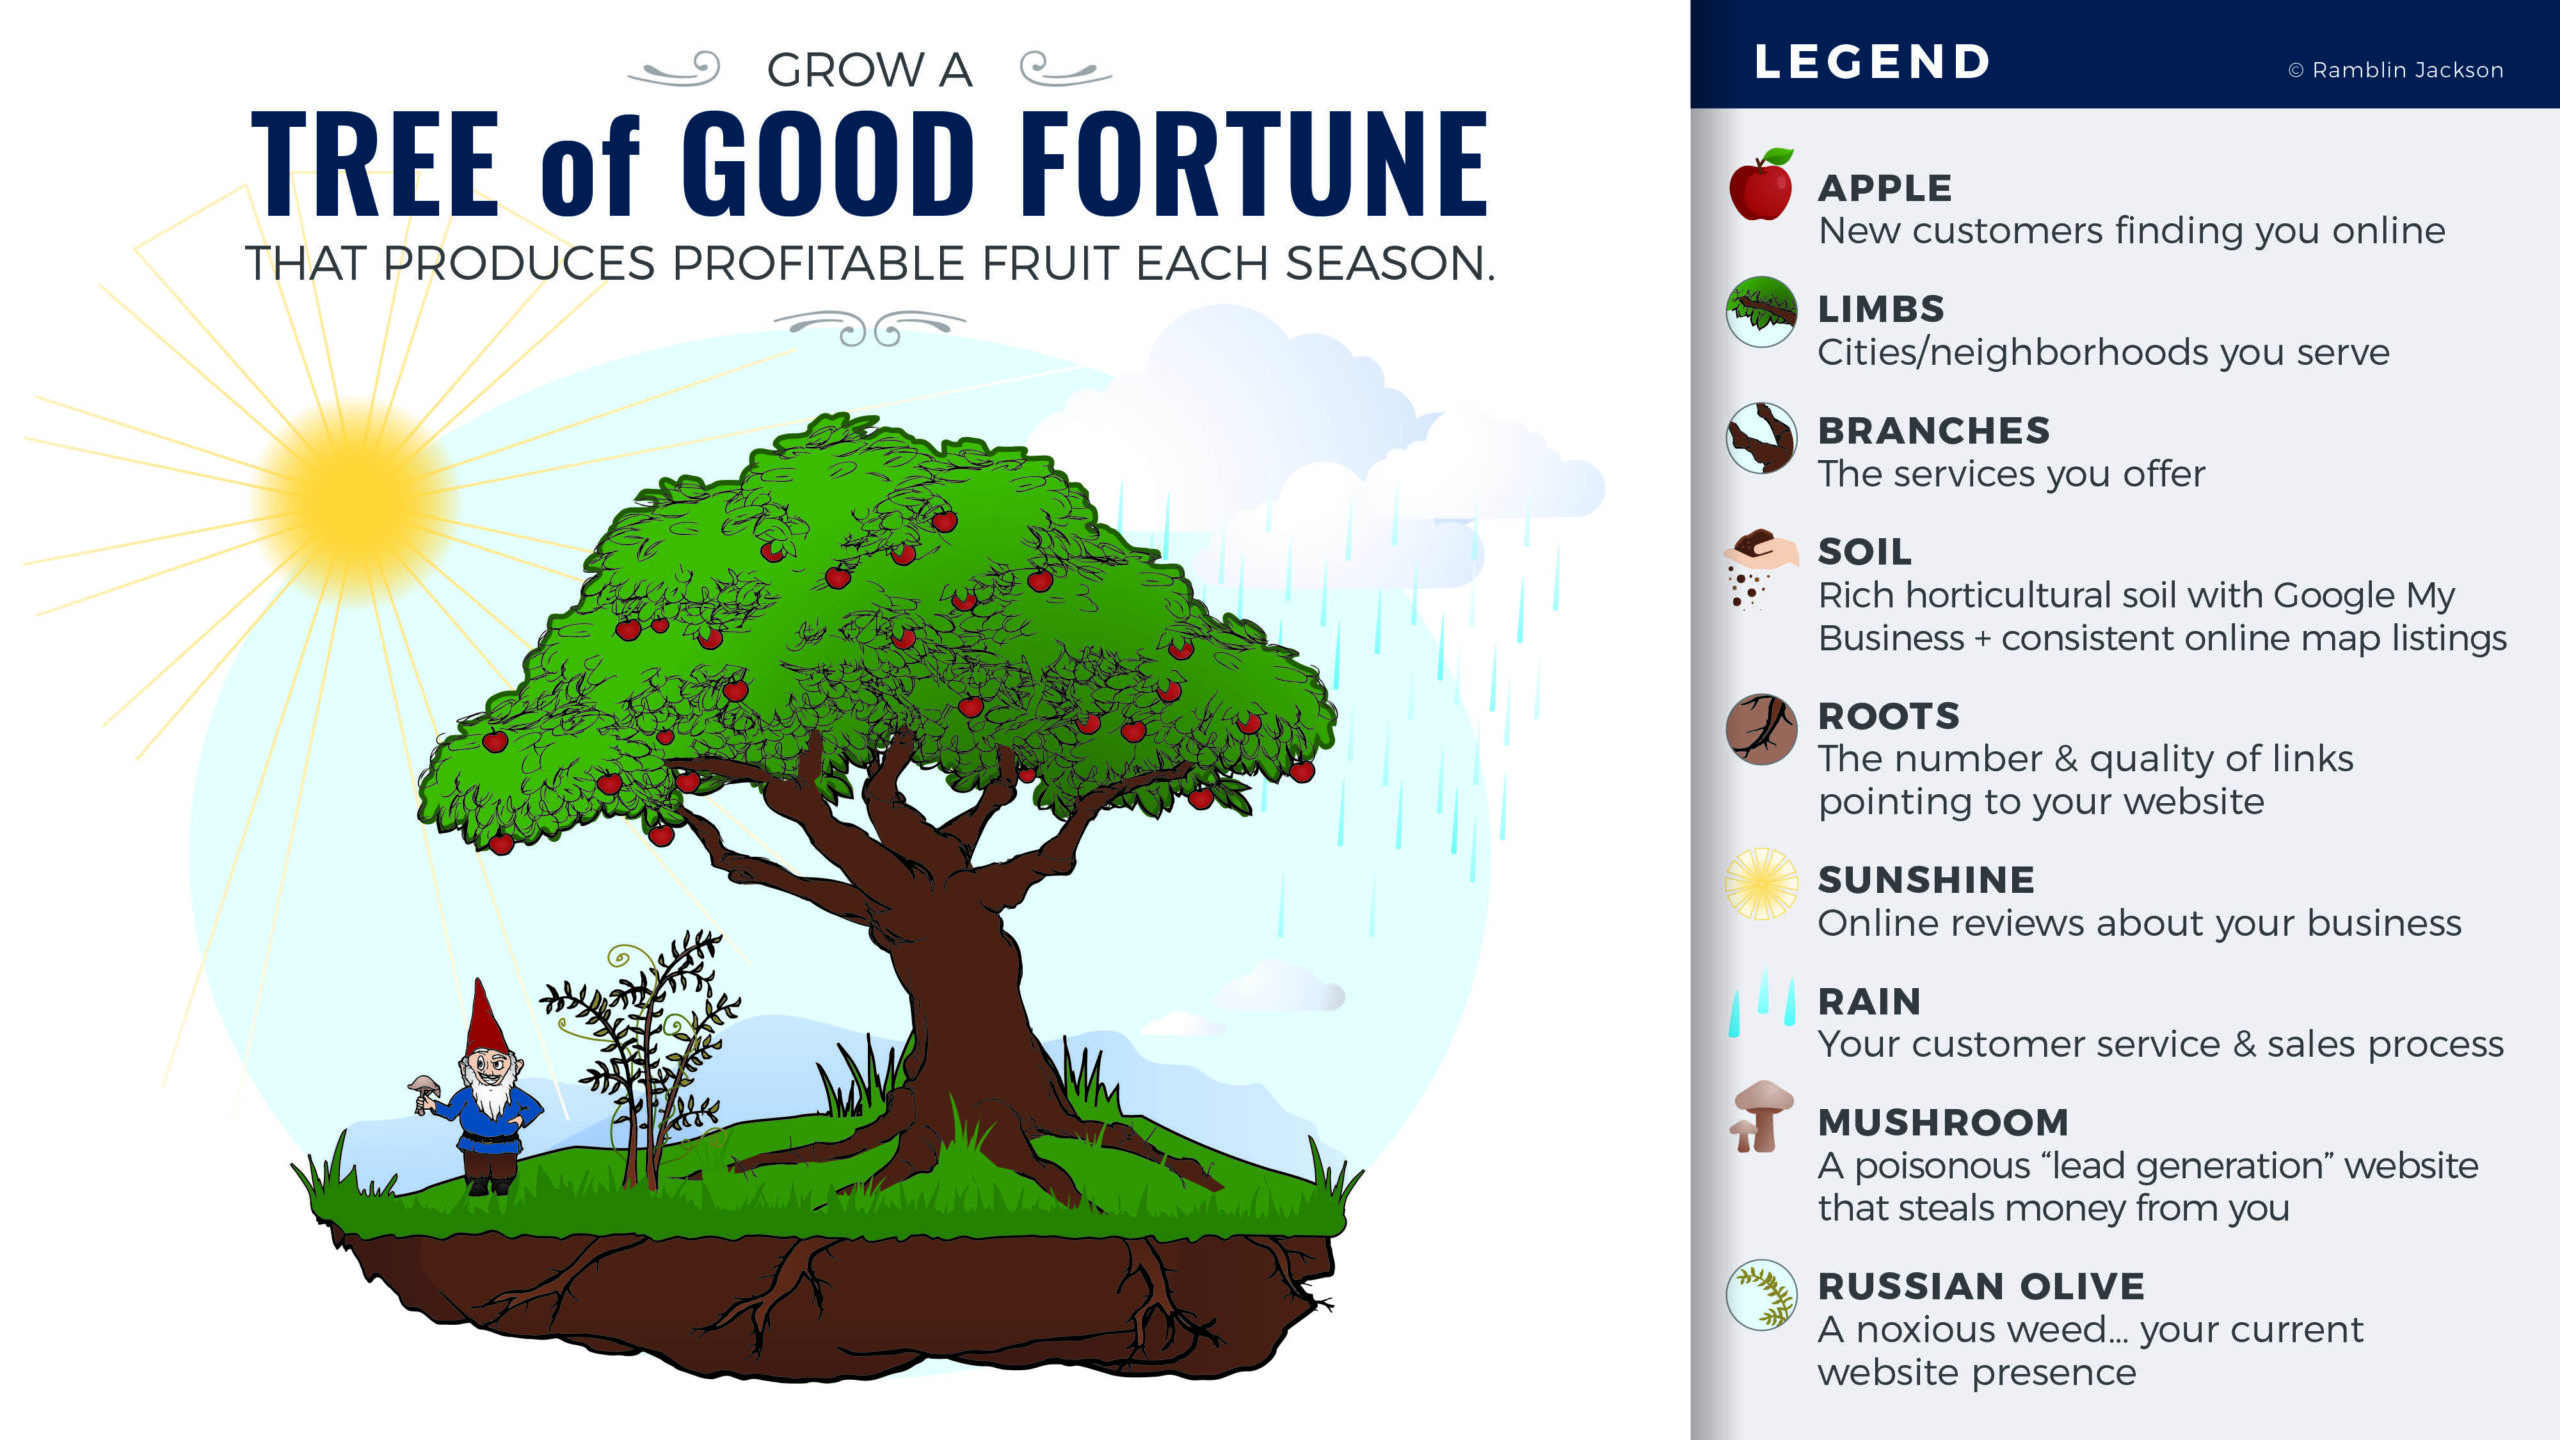 RJ_Tree Good Fortune_13x7.5_FINAL_B